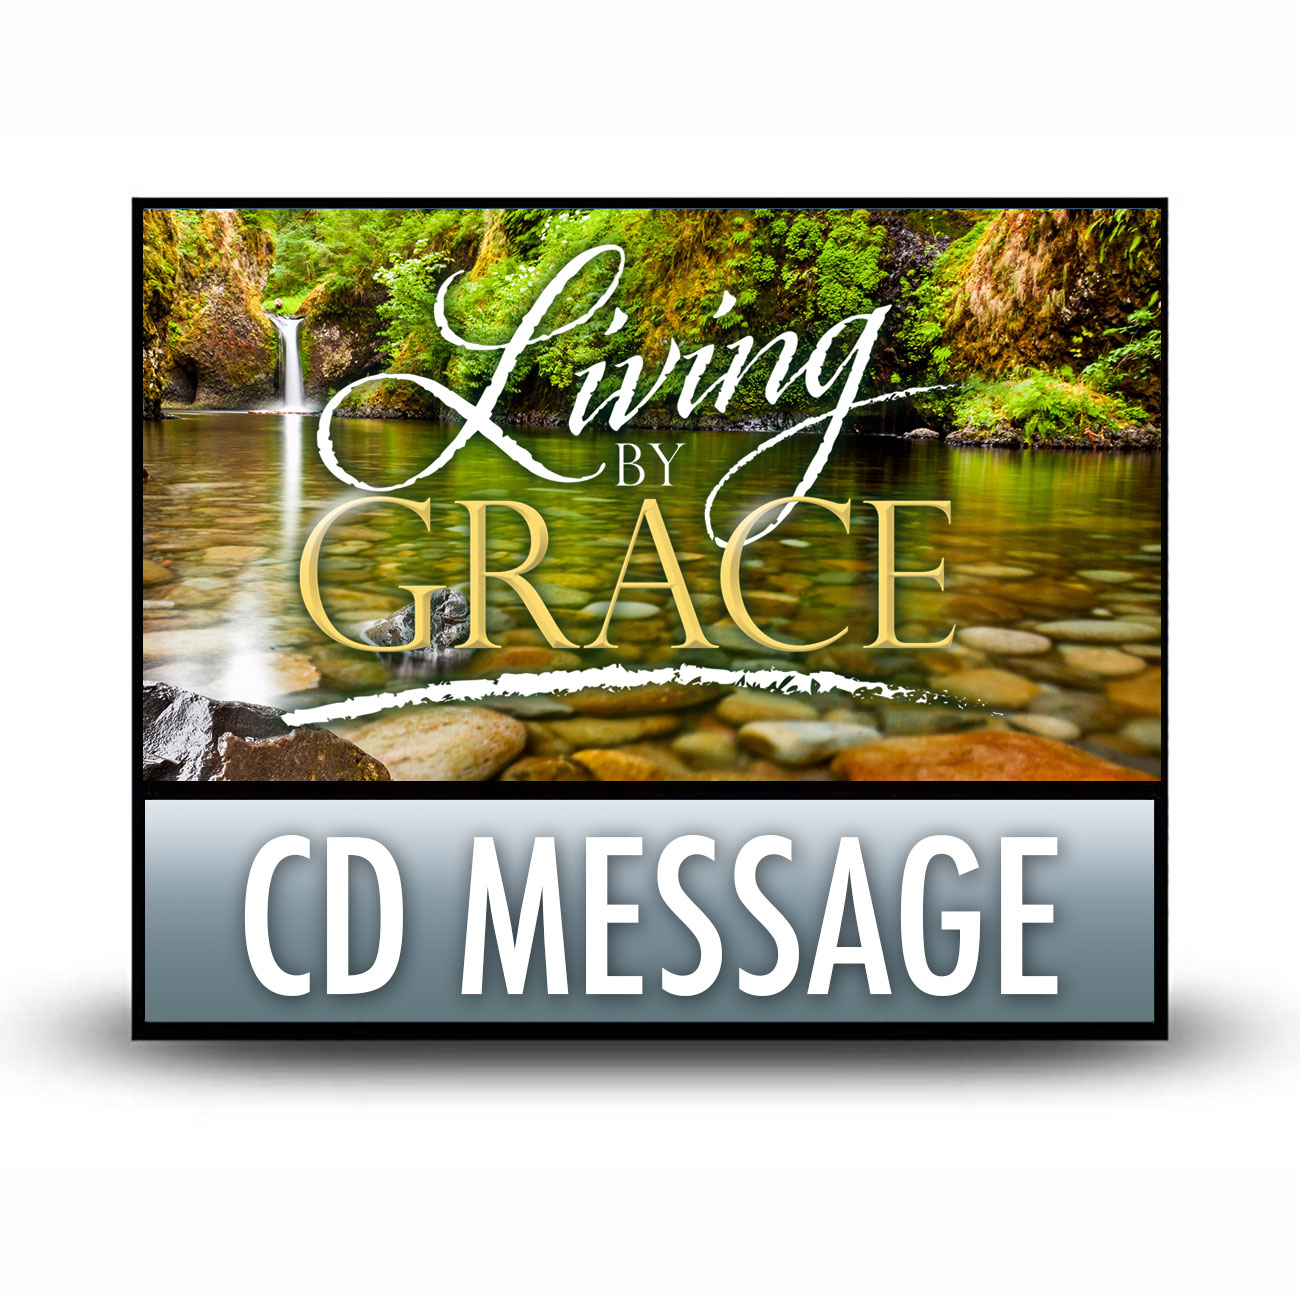 LBG03 CD message